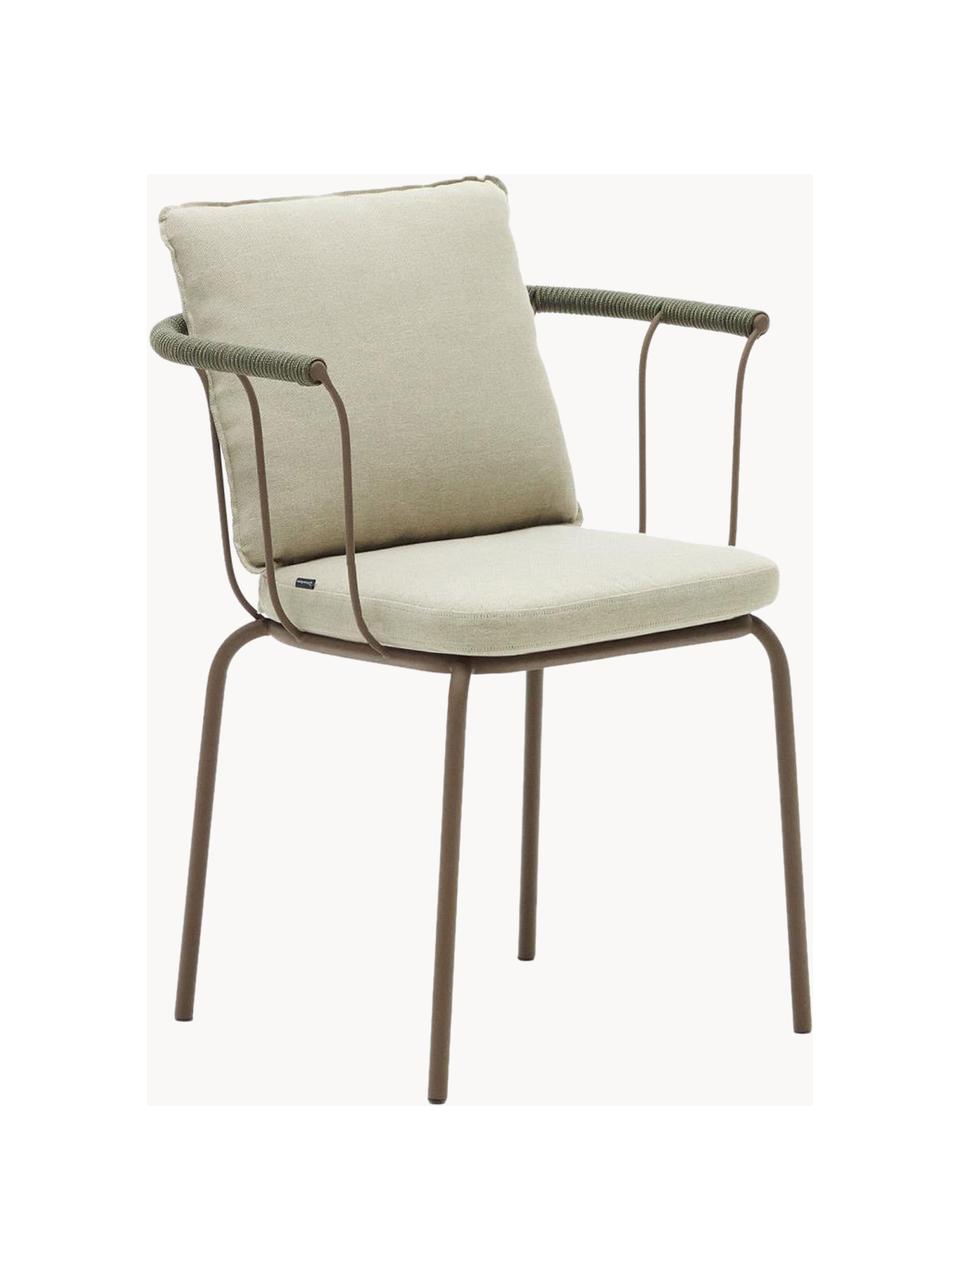 Ogrodowe krzesło z tapicerowanym siedziskiem Jay, Tapicerka: 100% poliester, Stelaż: metal malowany proszkowo, Jasnobeżowa tkanina, greige, S 59 x G 52 cm